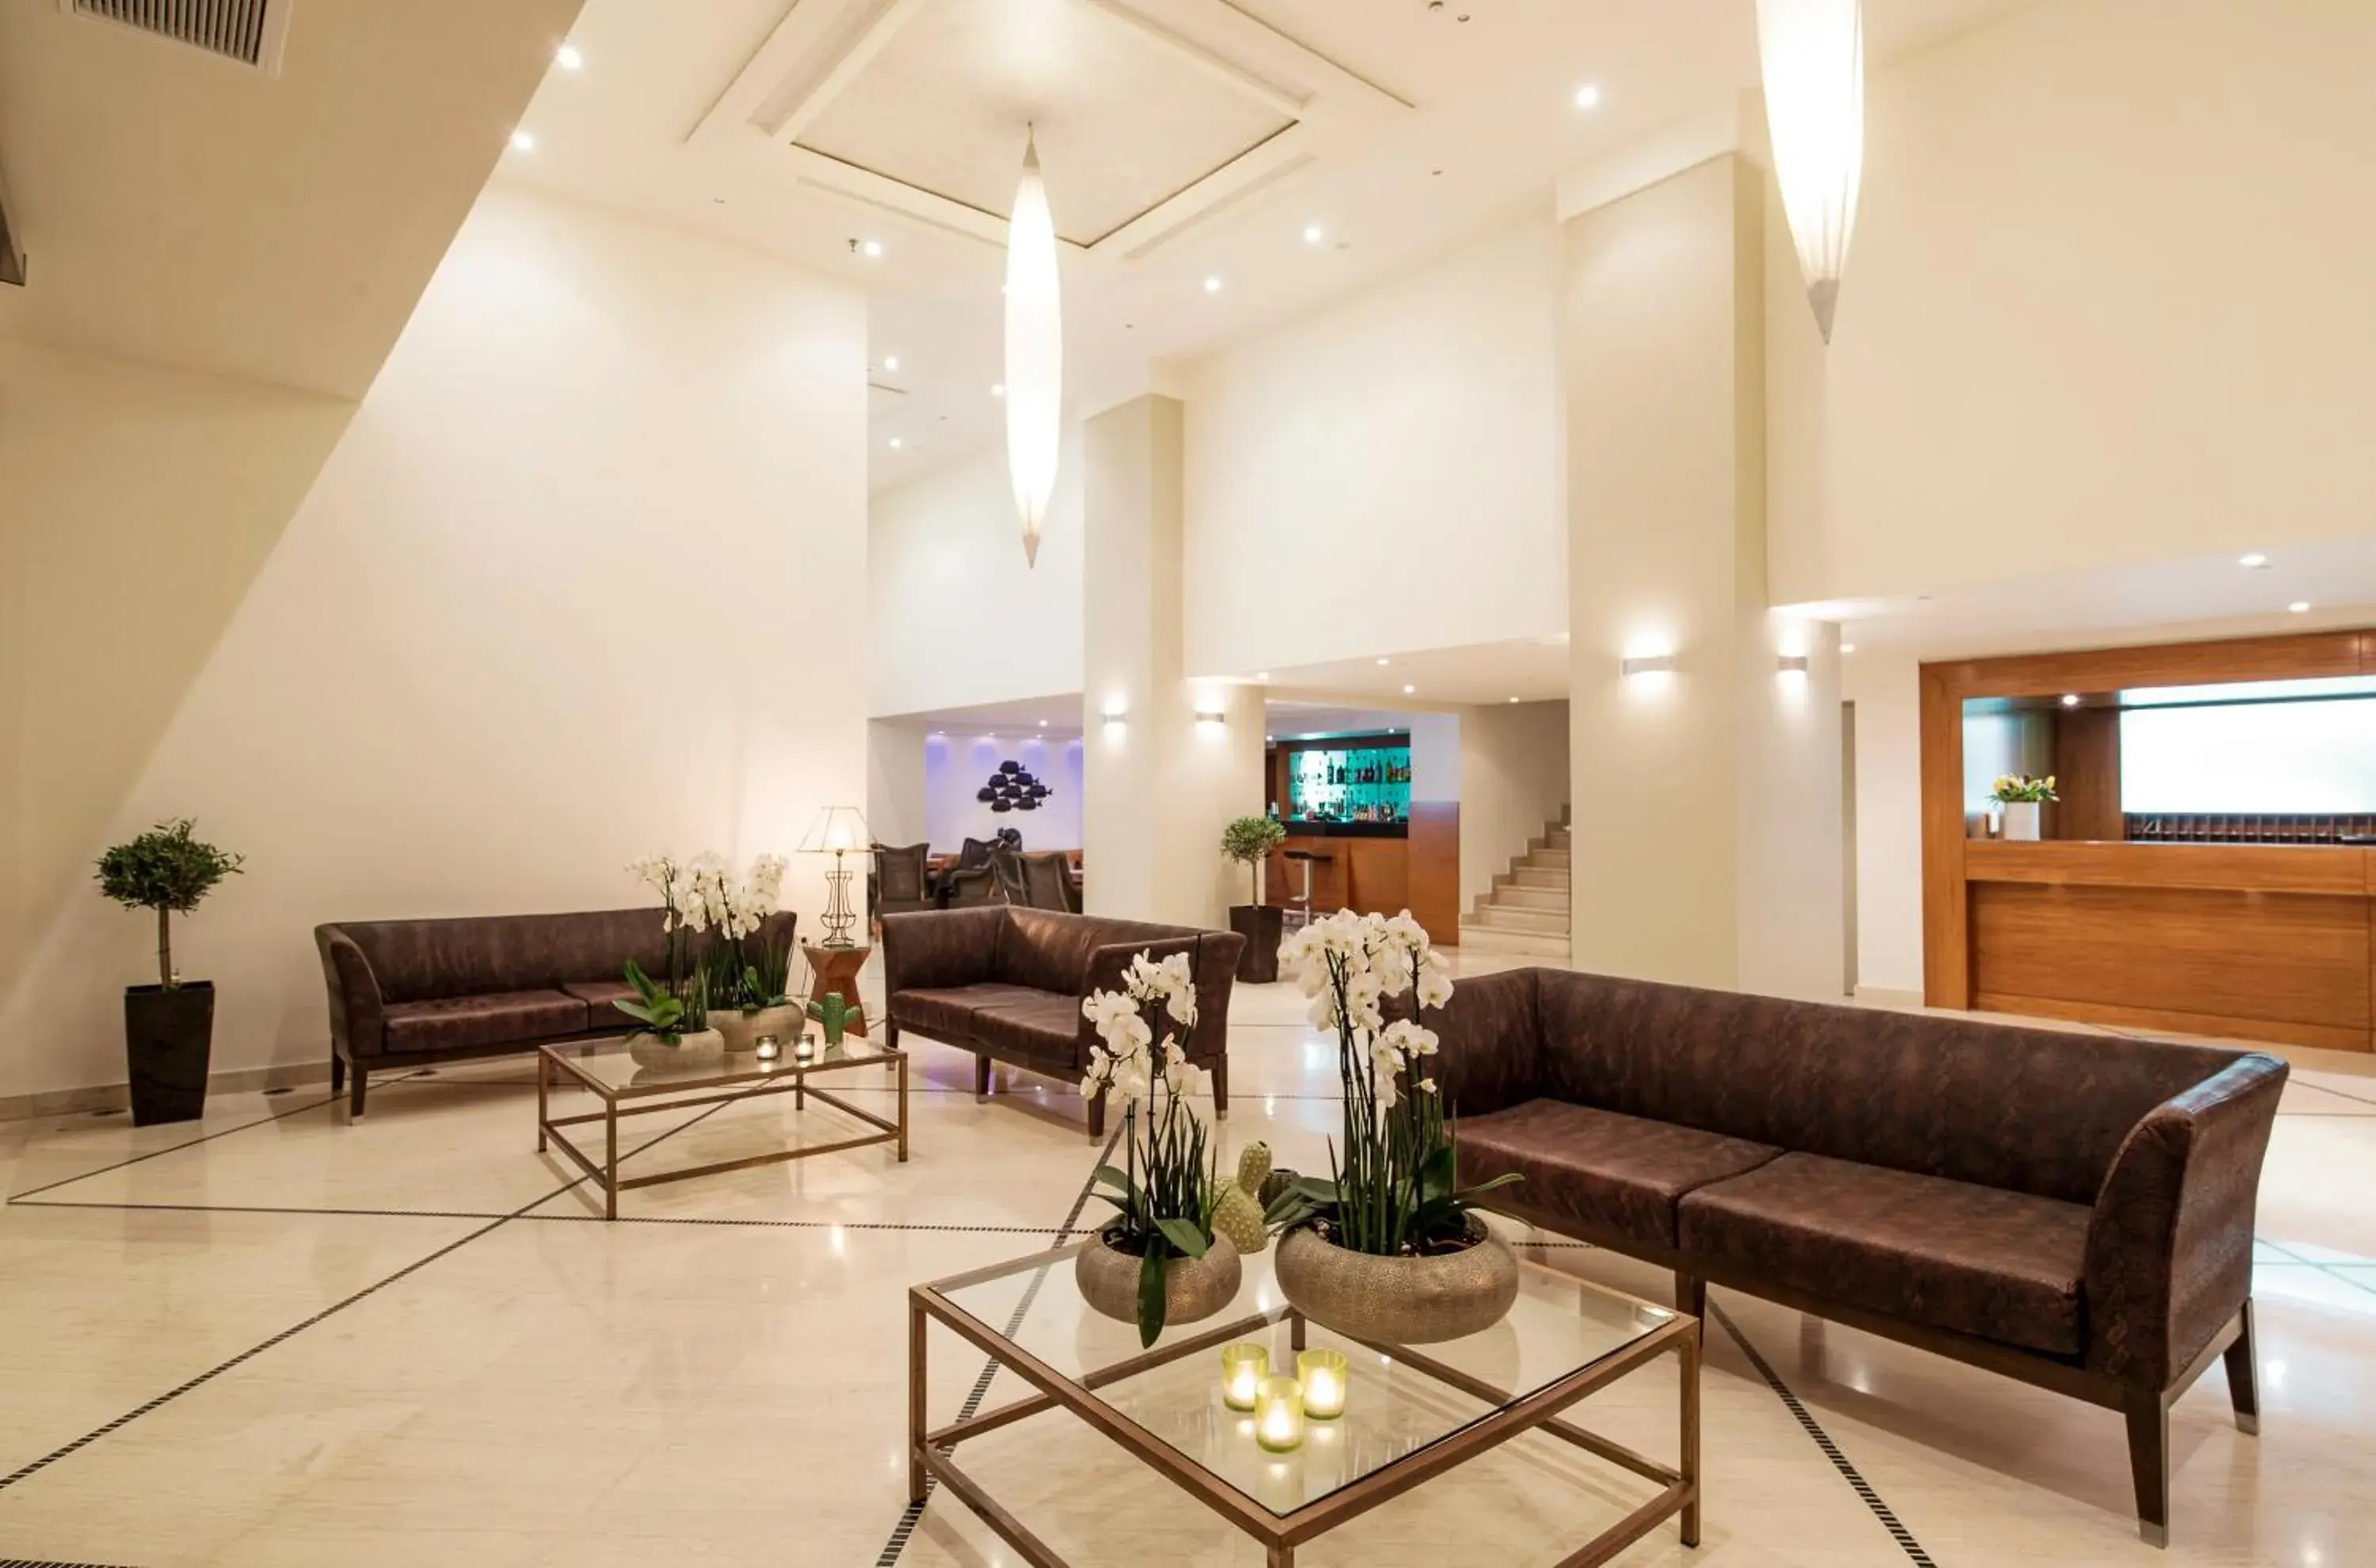 Lobby or reception, Lobby/Reception in Mitsis La Vita Beach Hotel